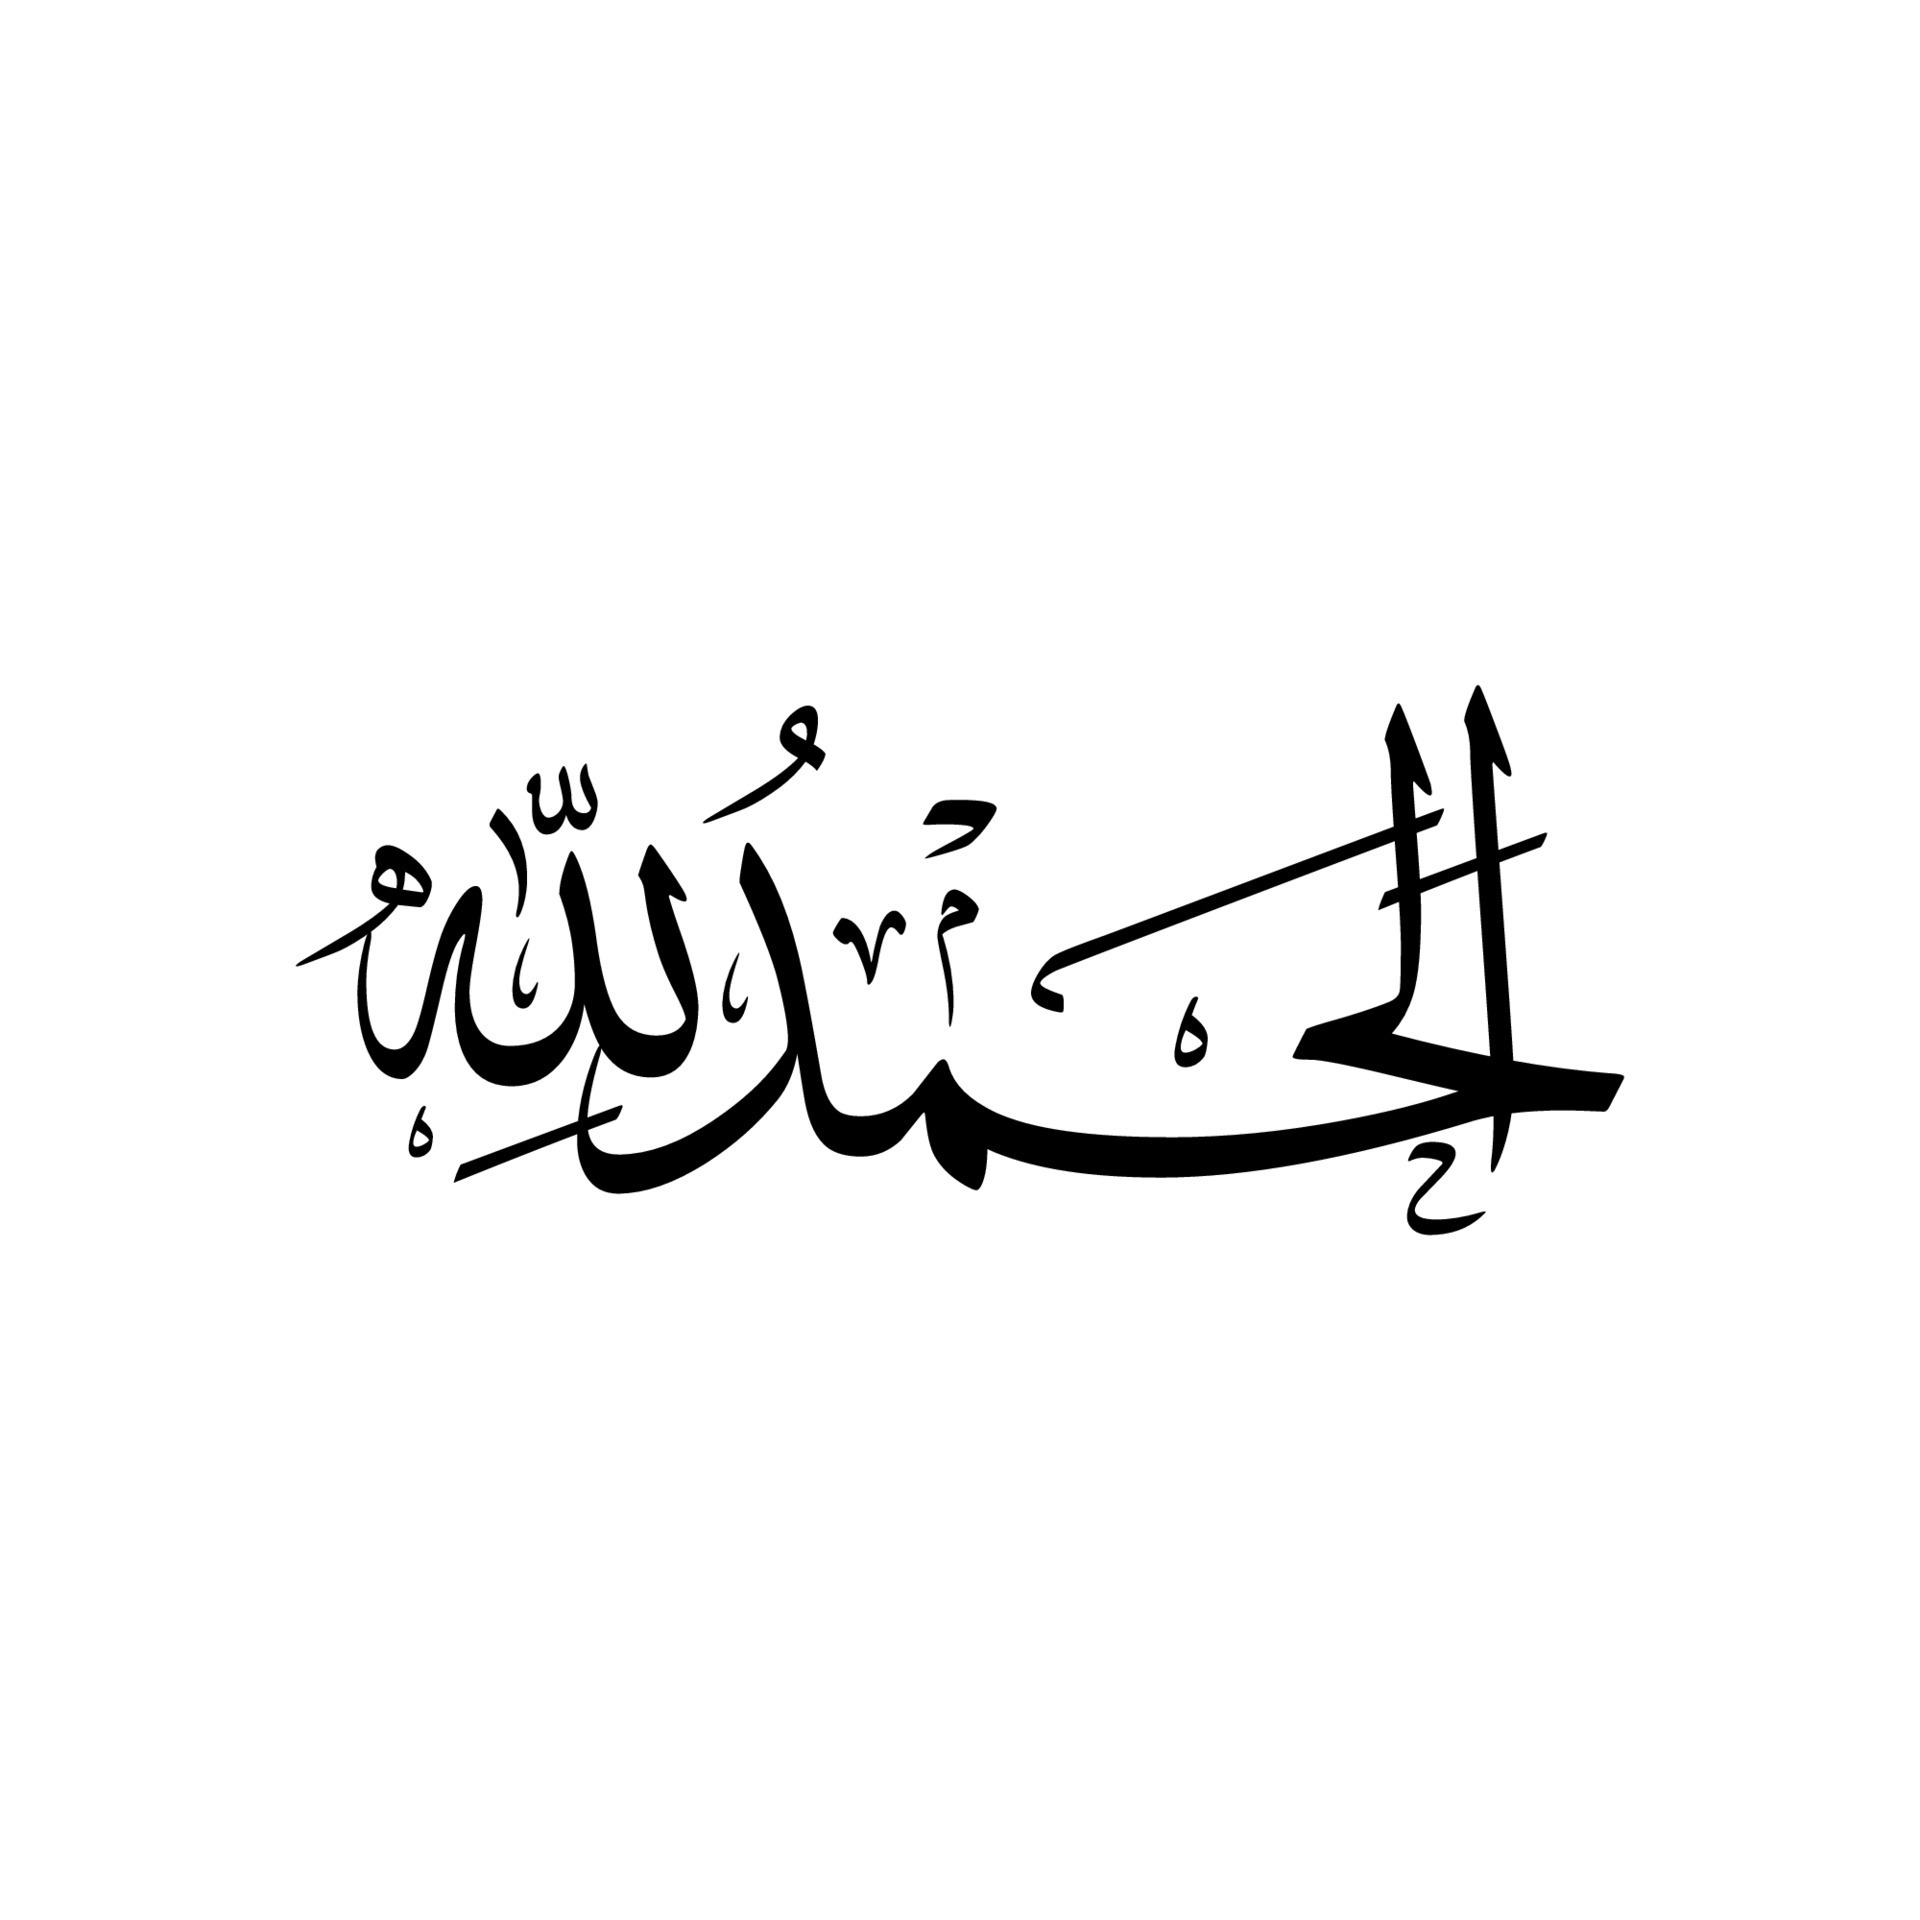 Alhamdulillah, Subhanallah, Allahu Akbar, Tasbih, Calligraphy Design ...